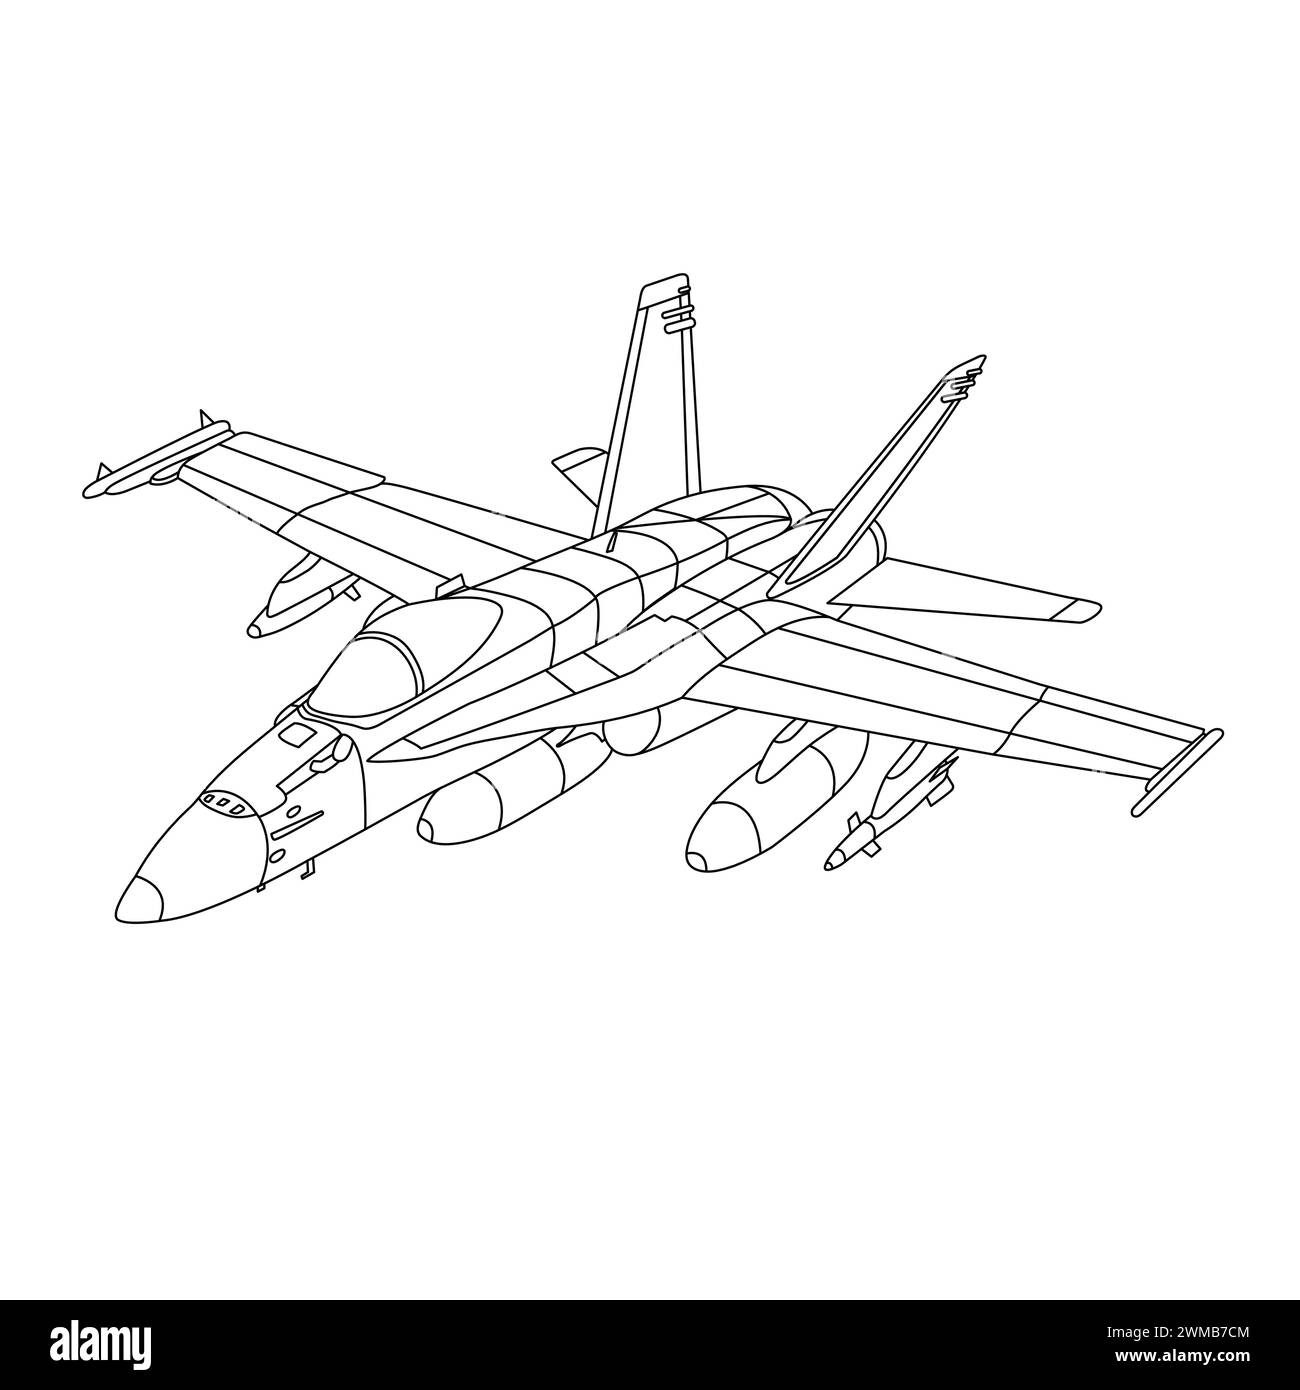 F-18 Flugzeug Malbuch für Kinder und Erwachsene. F/A-18 Hornet Militärflugzeug. Kampfflugzeug F18 – Umrissdarstellung. War Plane Drawing Line Art Stock Vektor